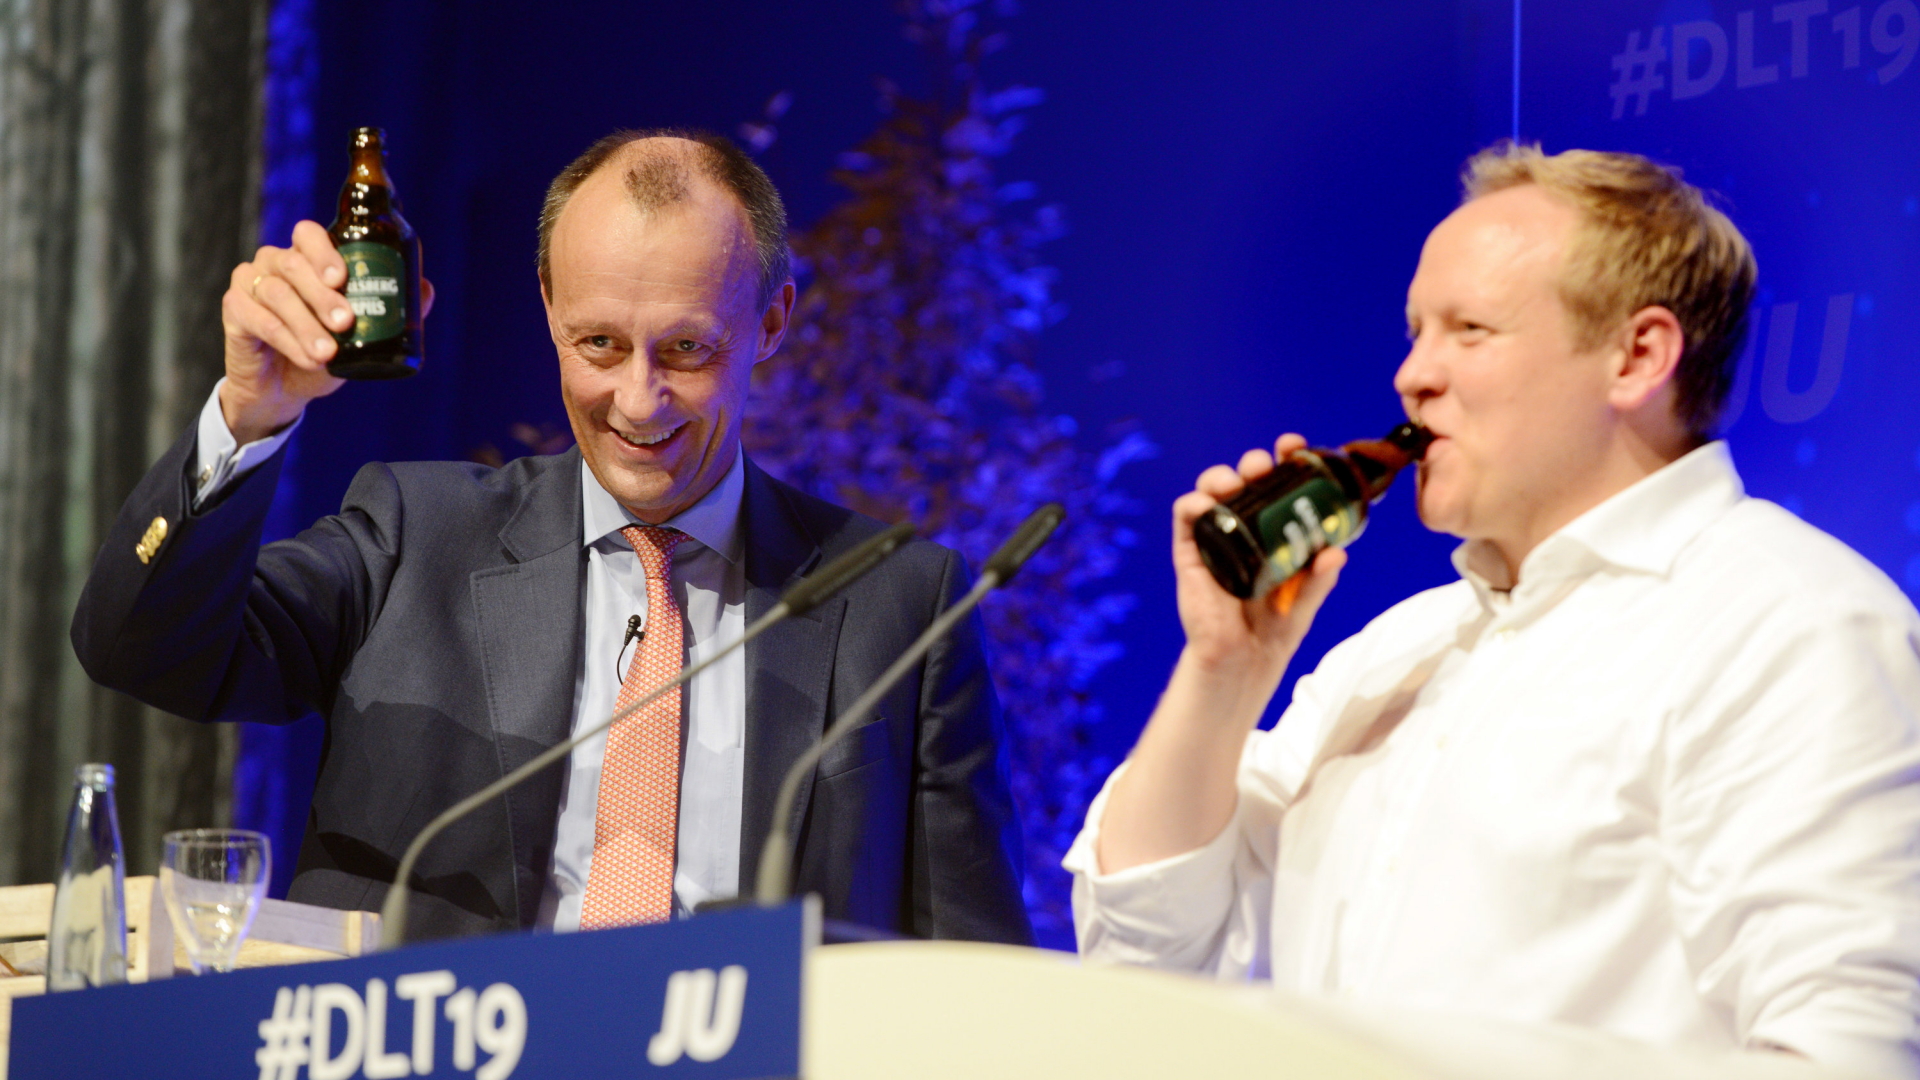 Friedrich Merz (l, CDU), Vizepräsident des Wirtschaftsrats, und Tilman Kuban, Bundesvorsitzender der Jungen Union Deutschland, trinken nach der Rede von Merz beim Deutschlandtag der Jungen Union auf der Bühne zusammen Bier.  | dpa